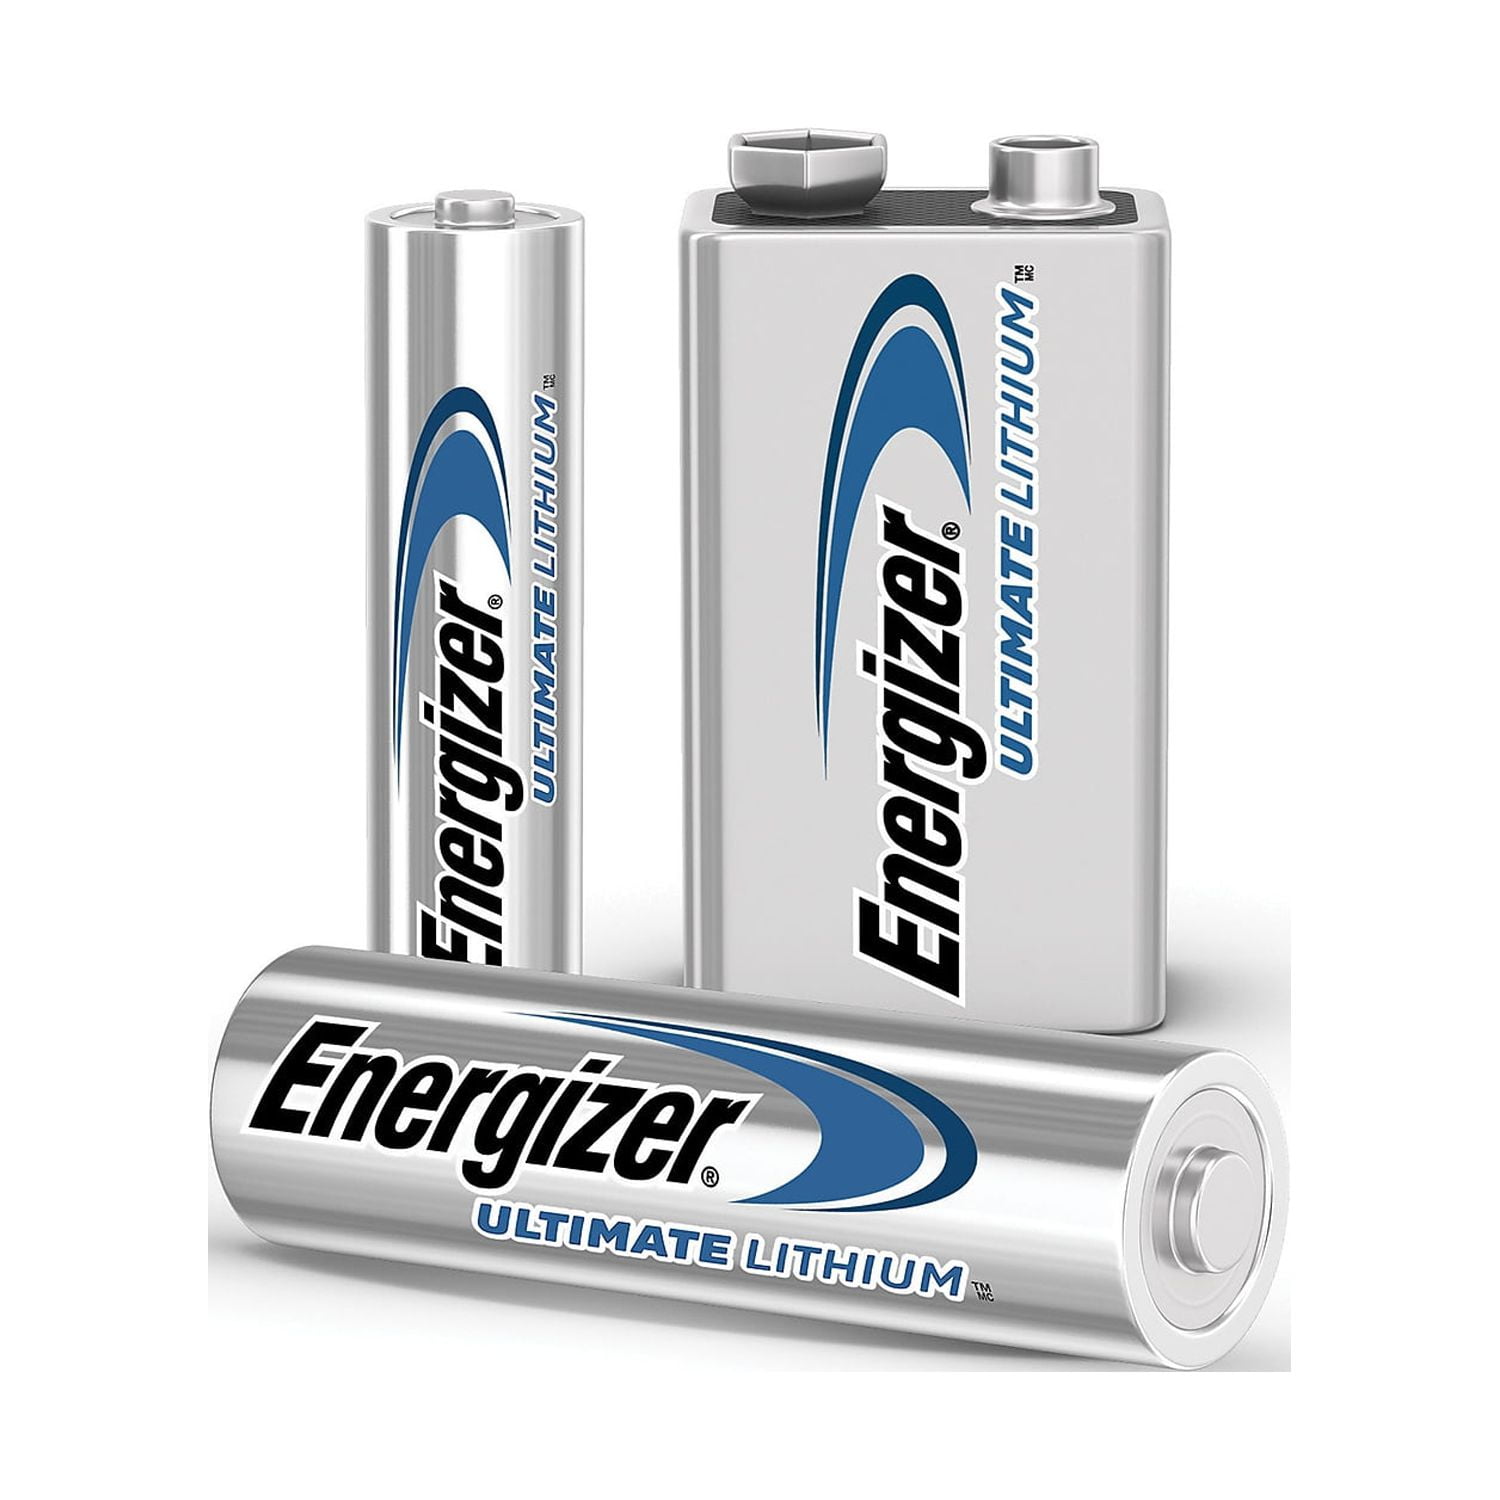 Blister 4 batteries Energizer Ultra LR03 + Energizer - Vlad